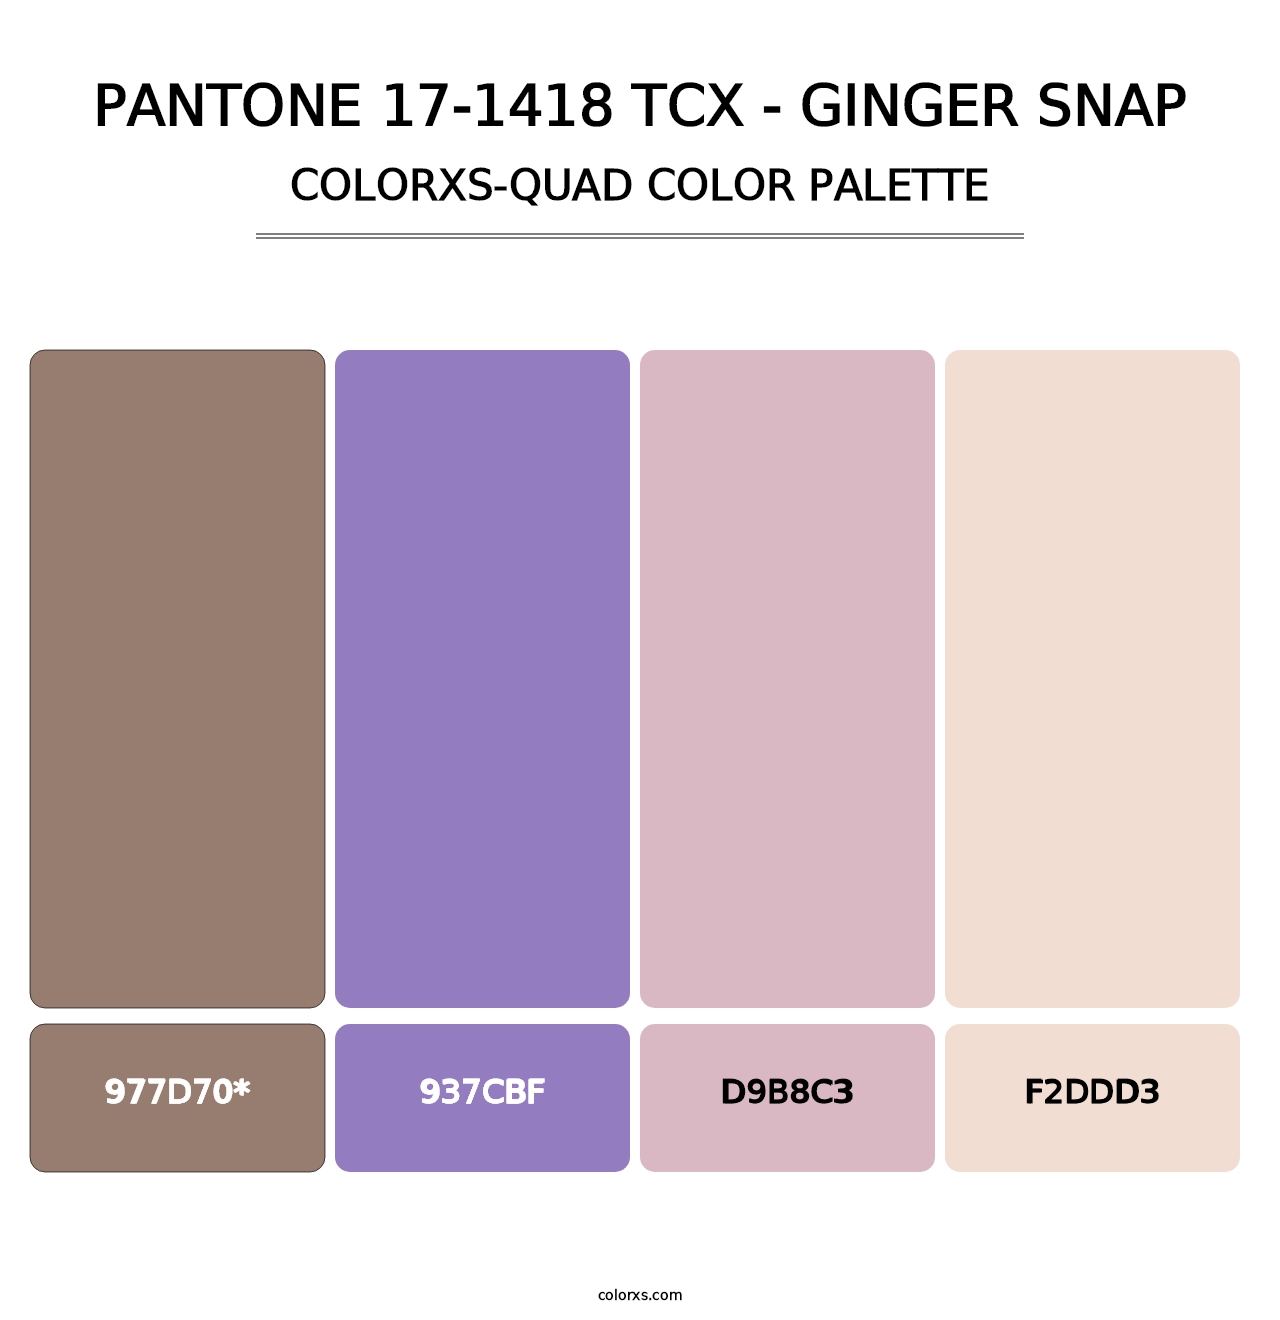 PANTONE 17-1418 TCX - Ginger Snap - Colorxs Quad Palette